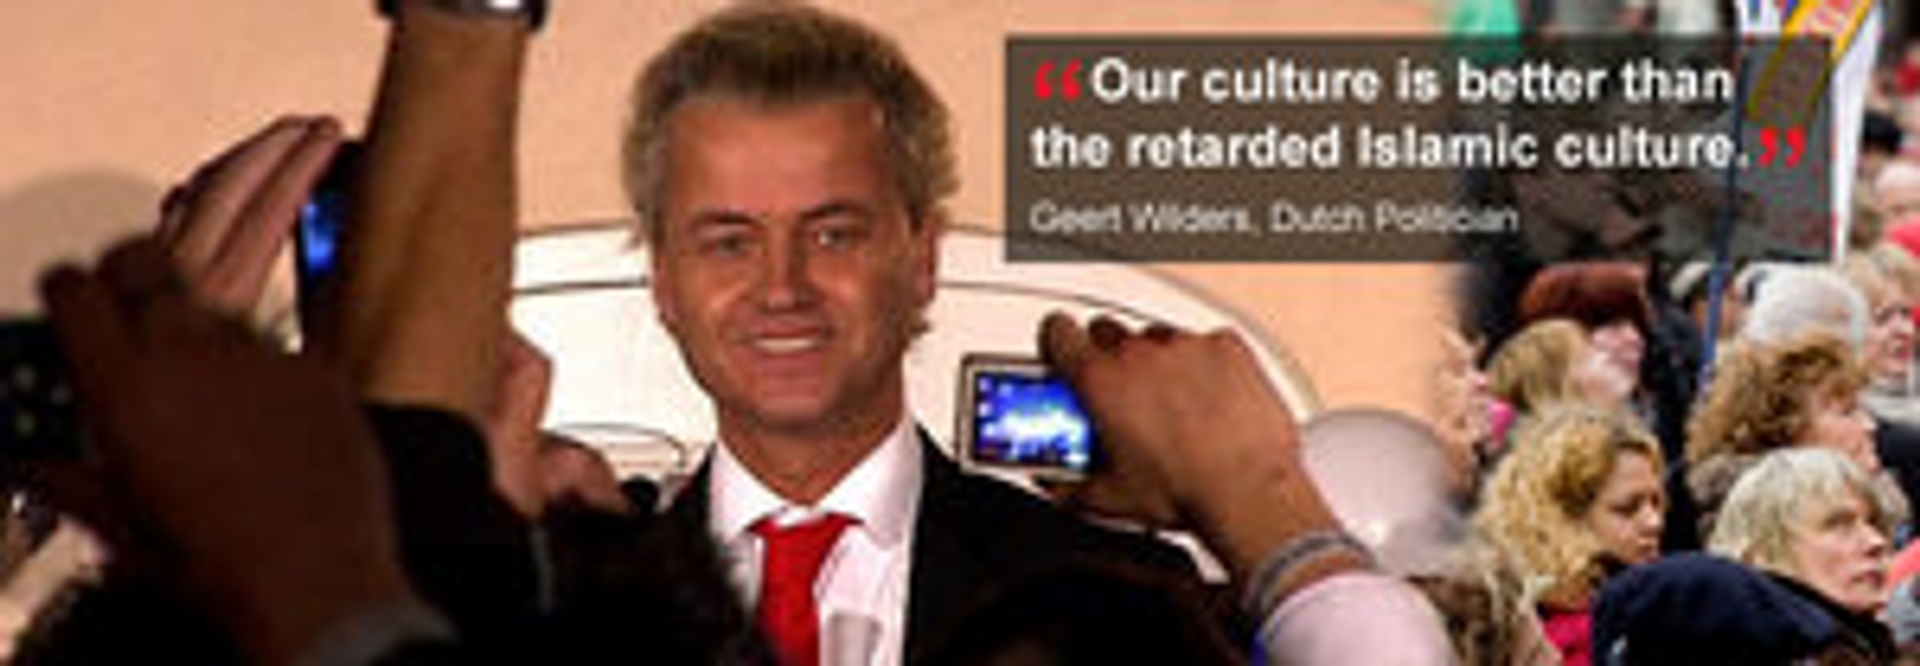 RTEmagicC_Wilders_Australie_01.jpg